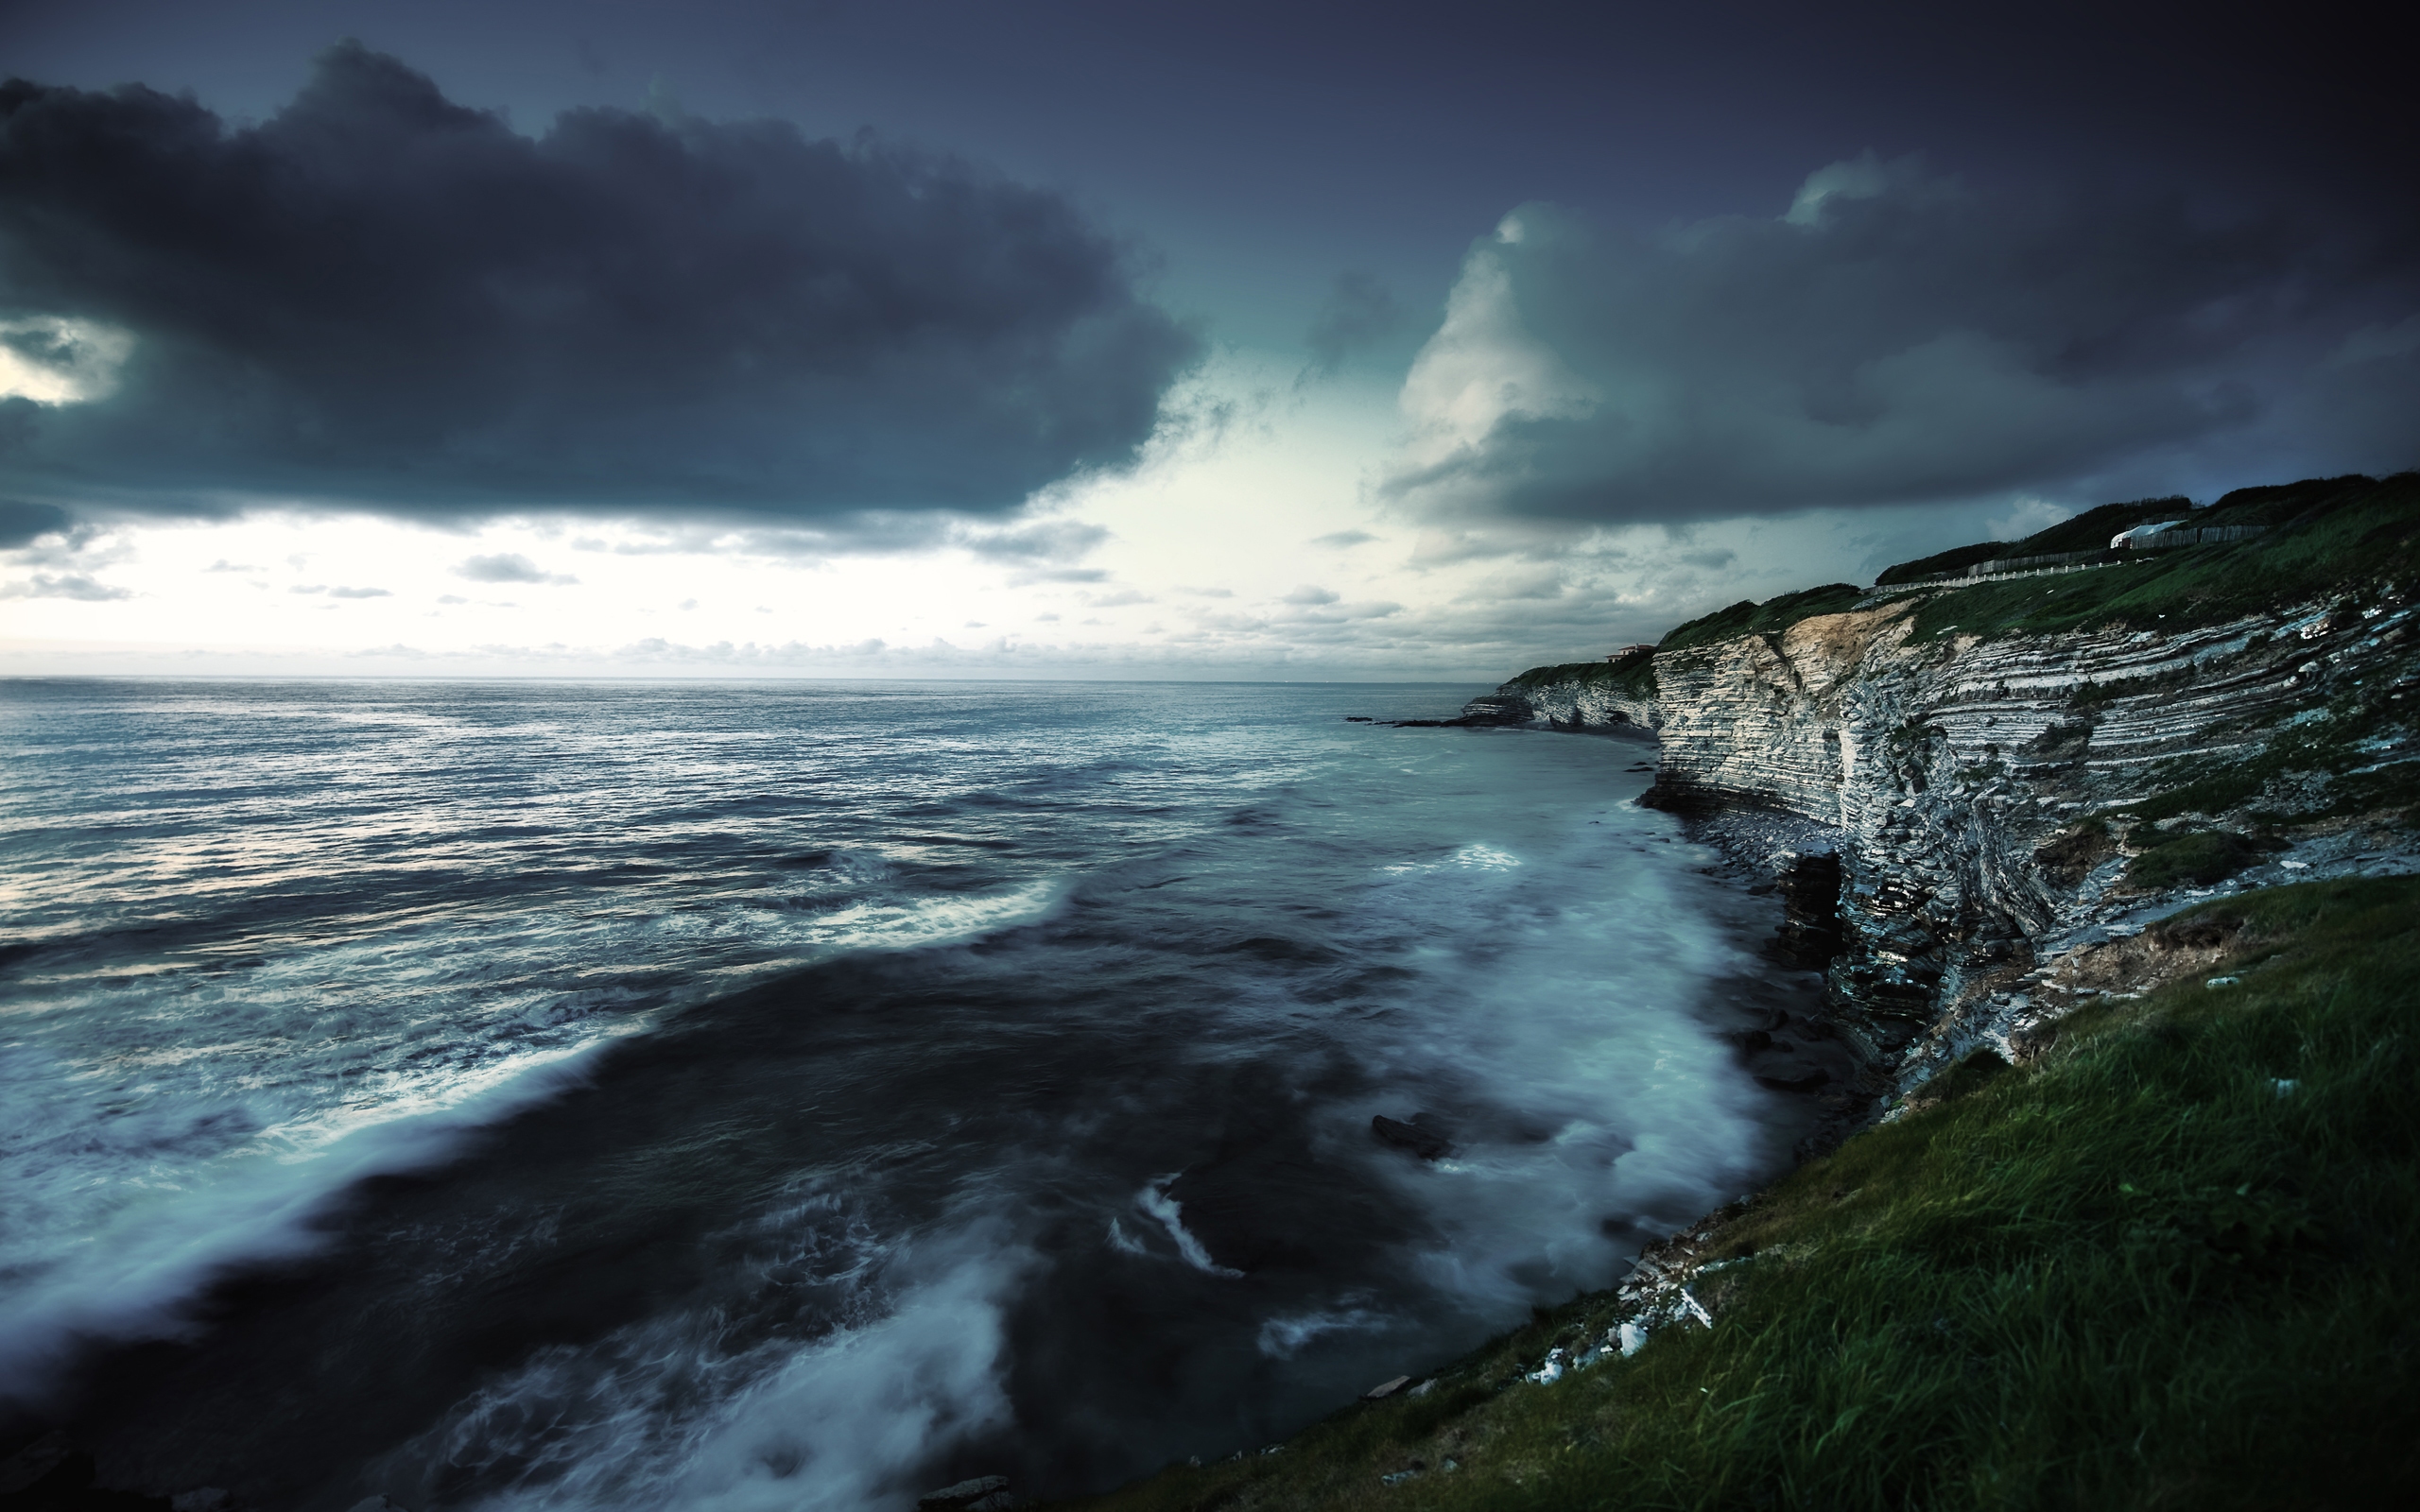 Atlantic coast. Исландия Атлантический океан. Исландия Атлантический океан берег шторм. Атлантический океан шторм. Баренцево море шторм.